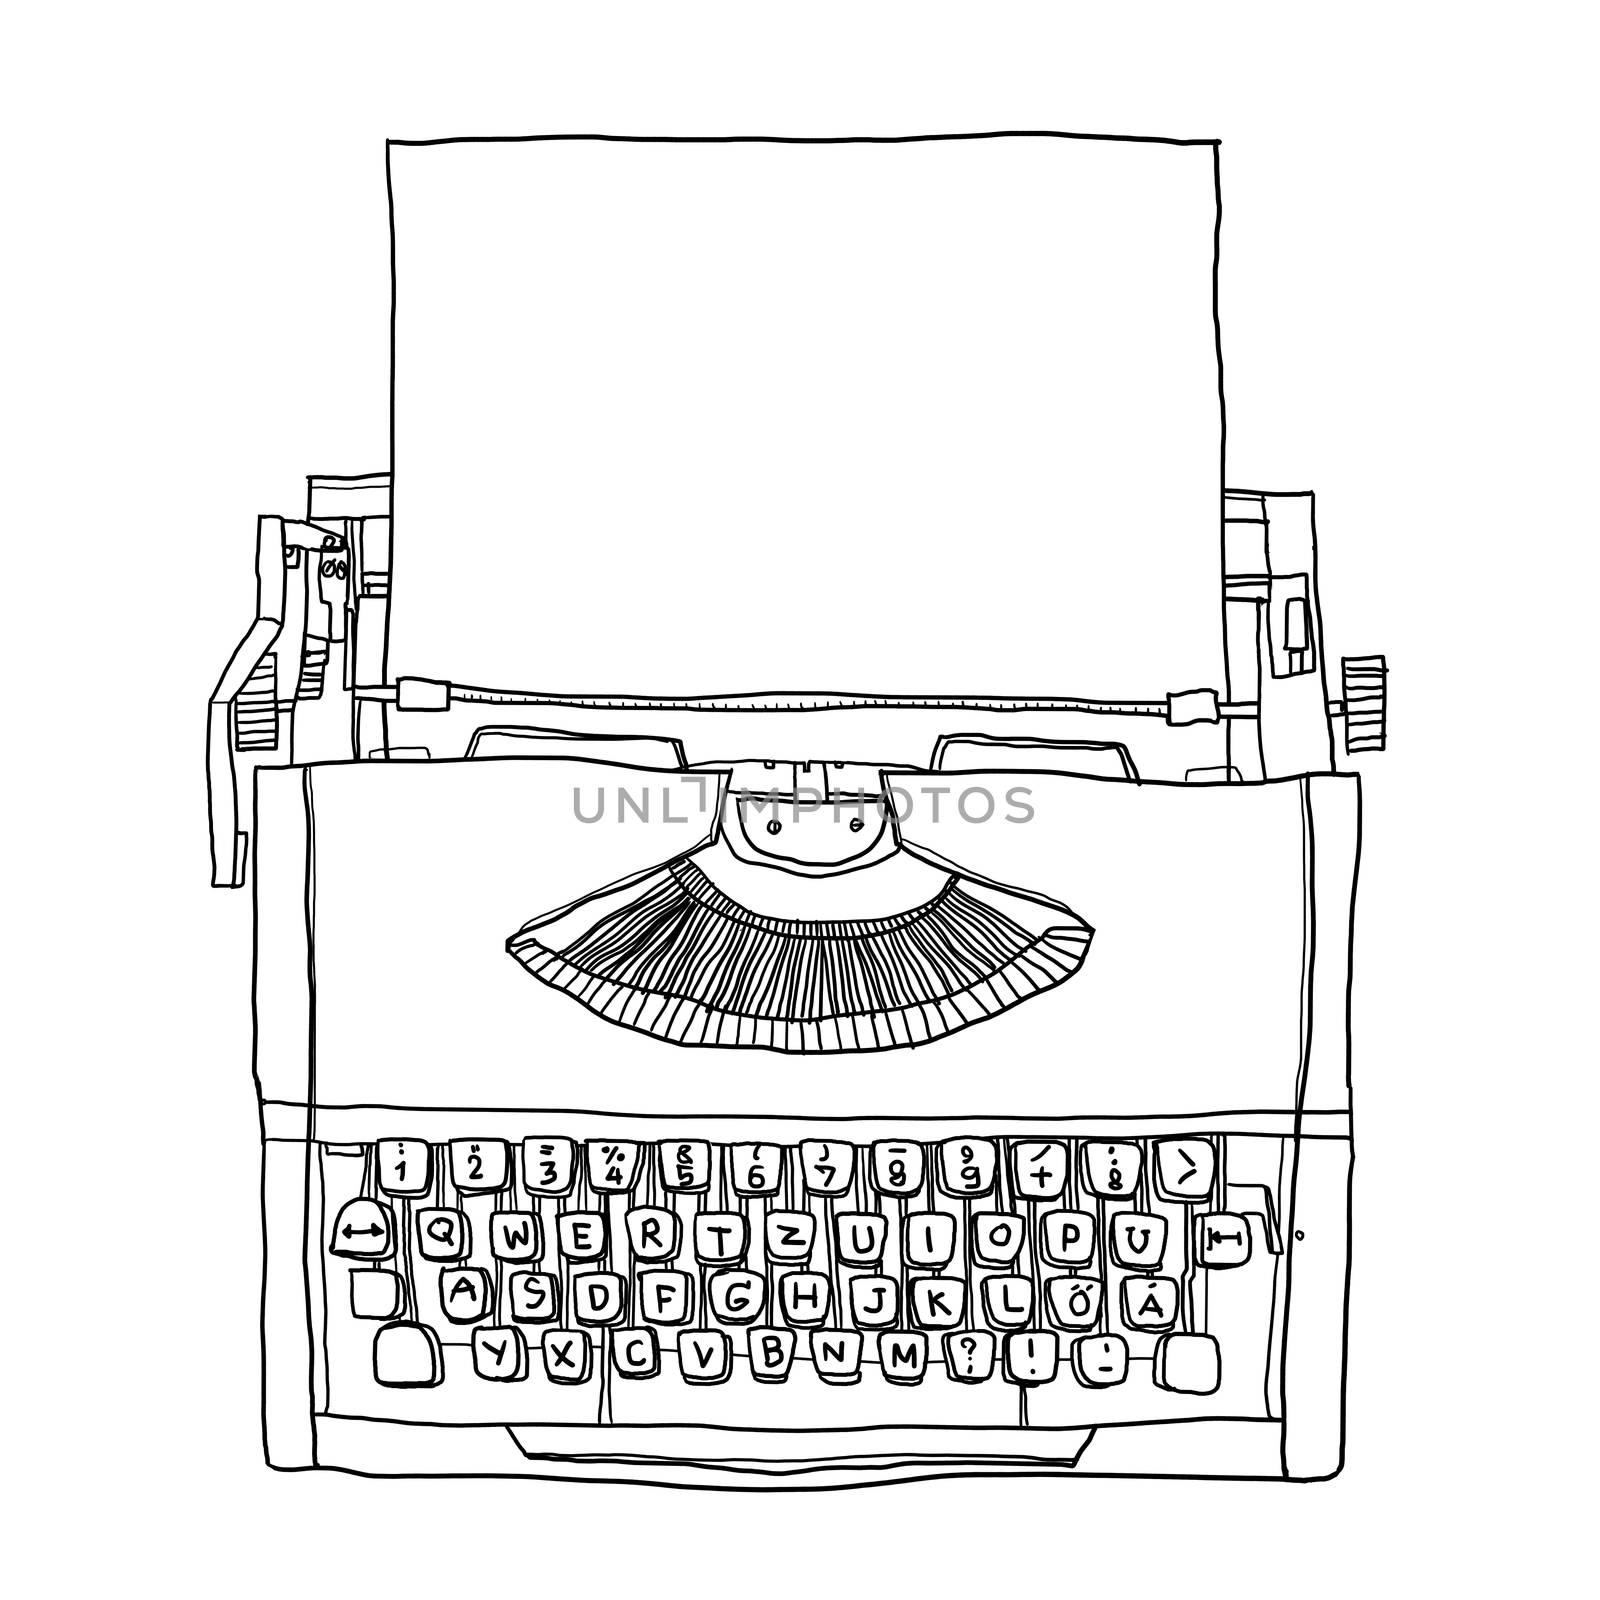 Orange Typewriter vintage with paper  line art illustration by paidaen